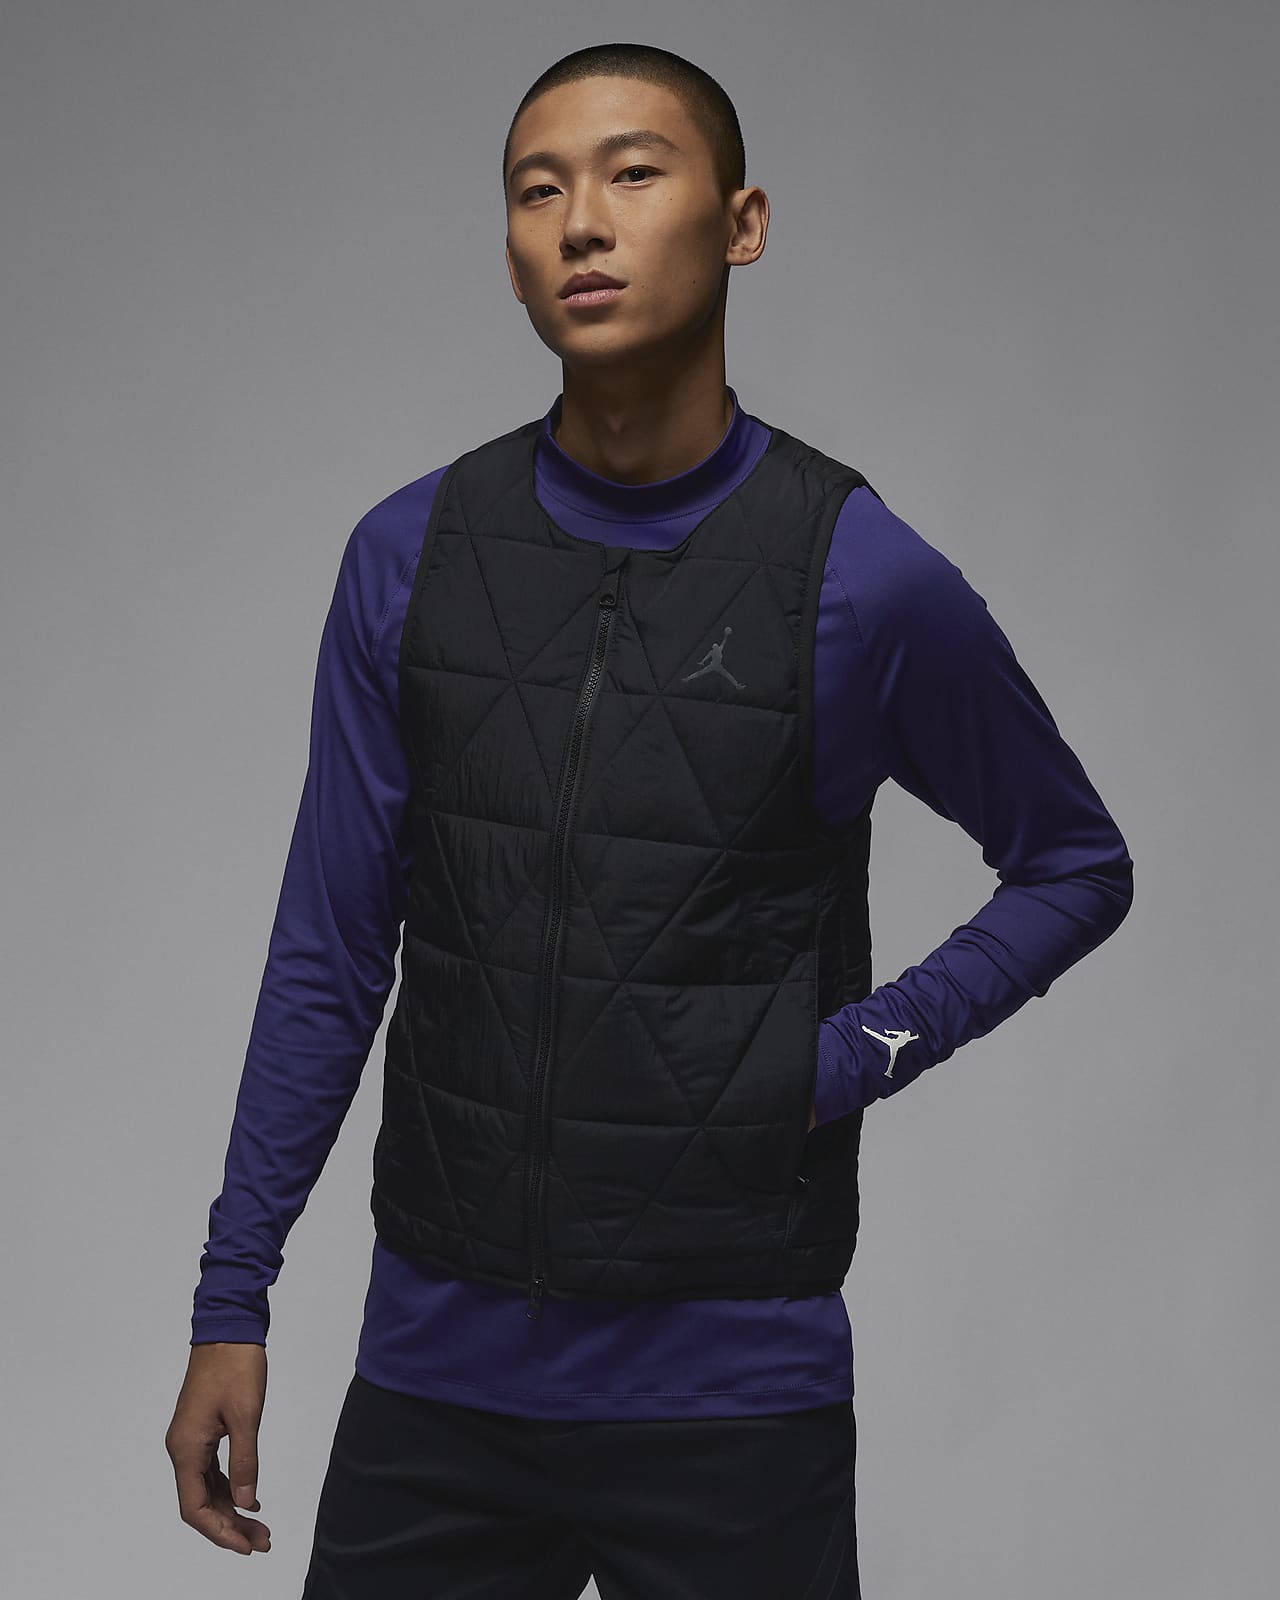 新品未使用品ですナイキ ジョーダンゴルフ Nike Jordan Golf Vest (新品)